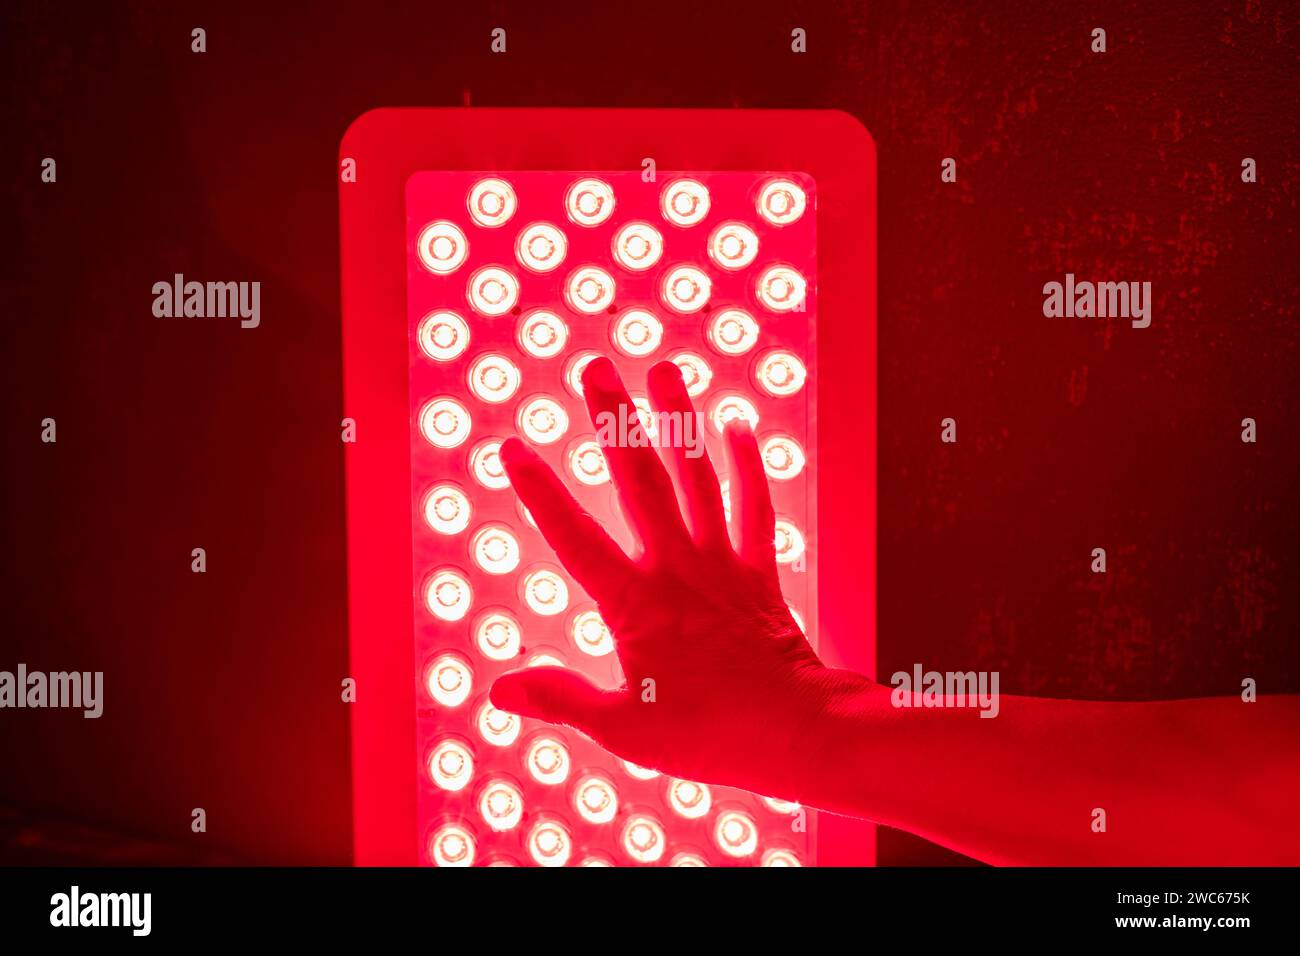 Gros plan de la main touchant les voyants du panneau de luminothérapie rouge Banque D'Images